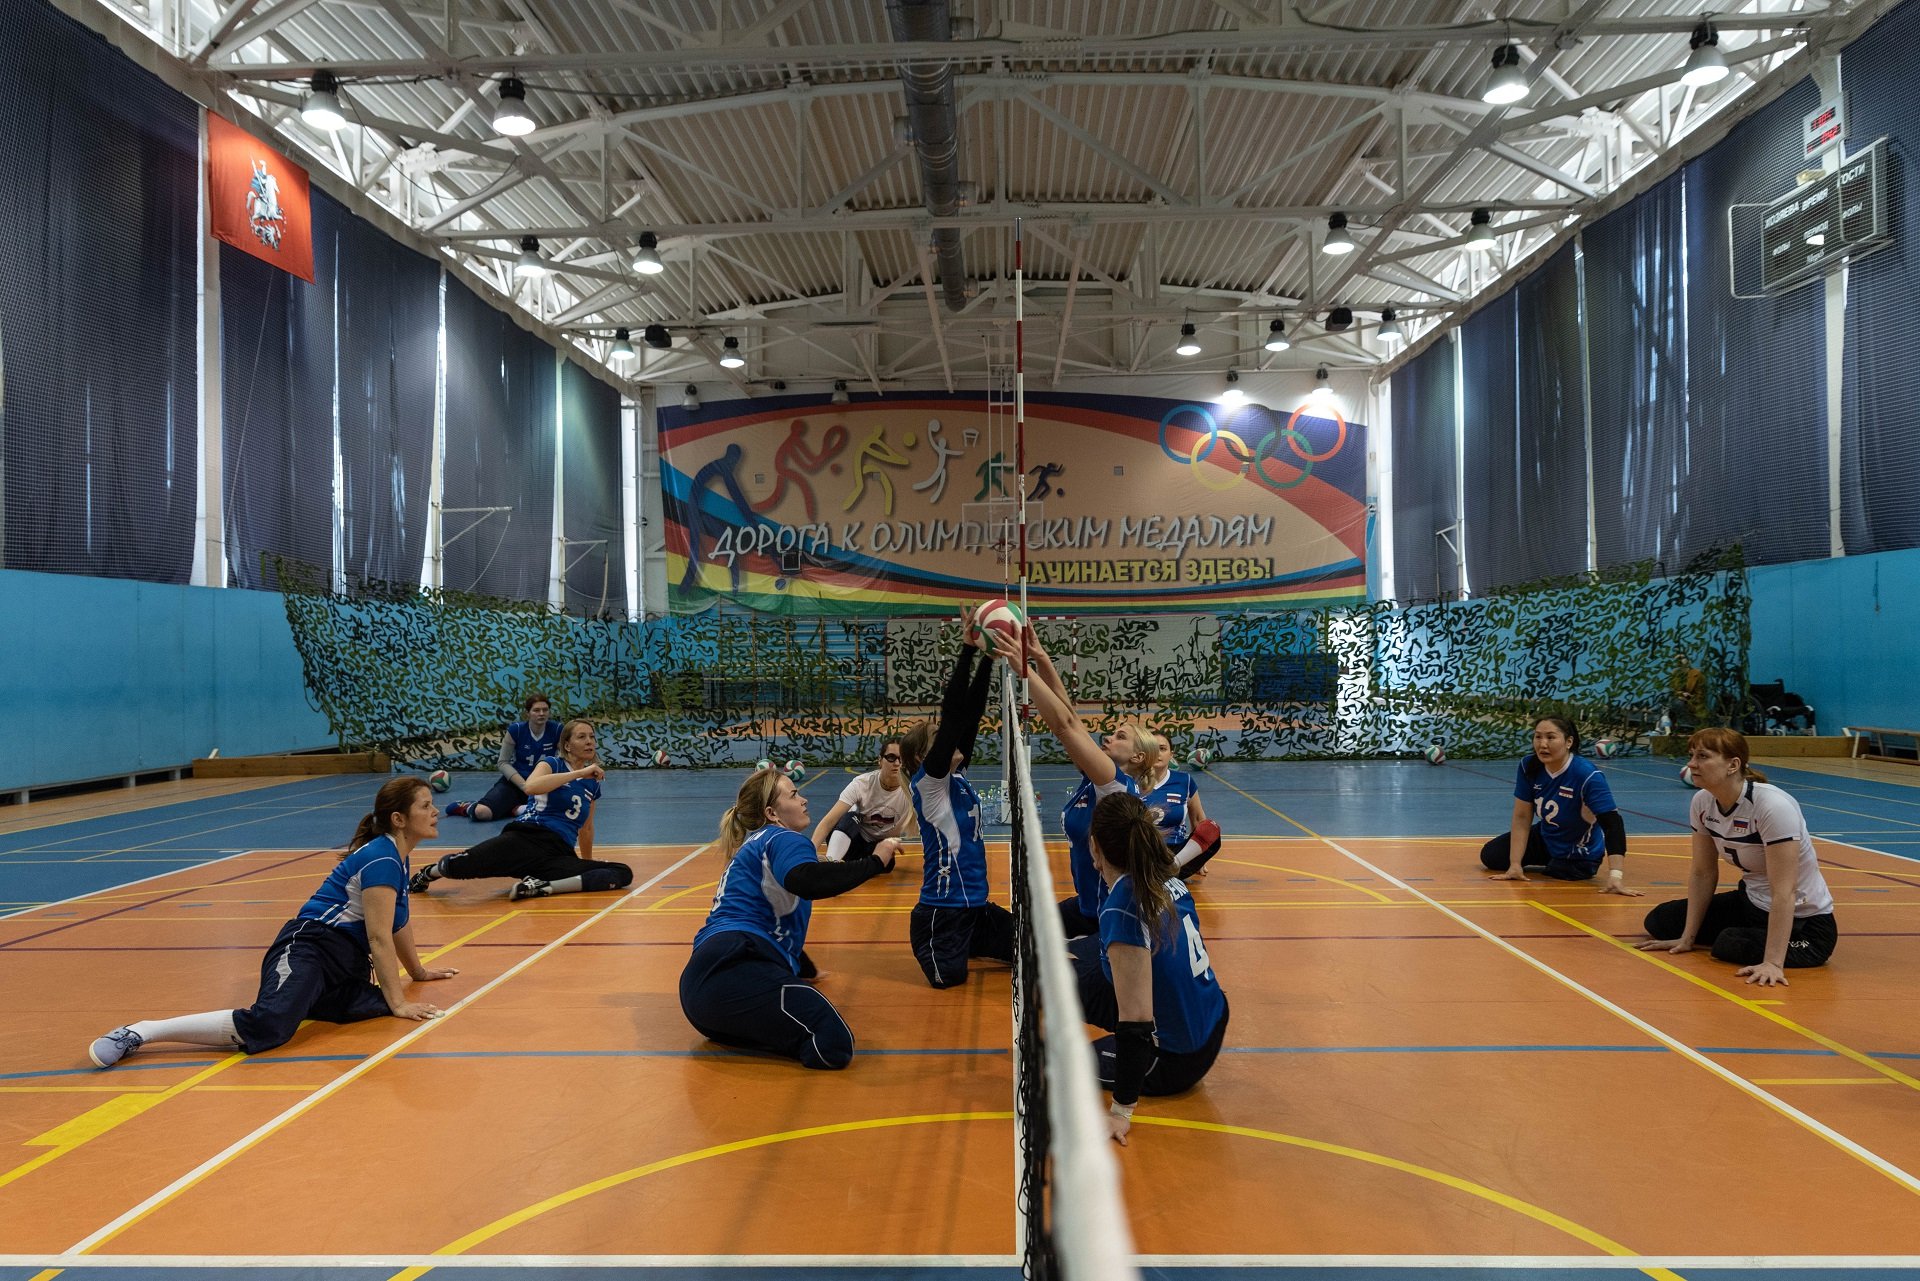 Тренировка сборной России по волейболу сидя. Фото: Виктория Одиссонова / «Новая»